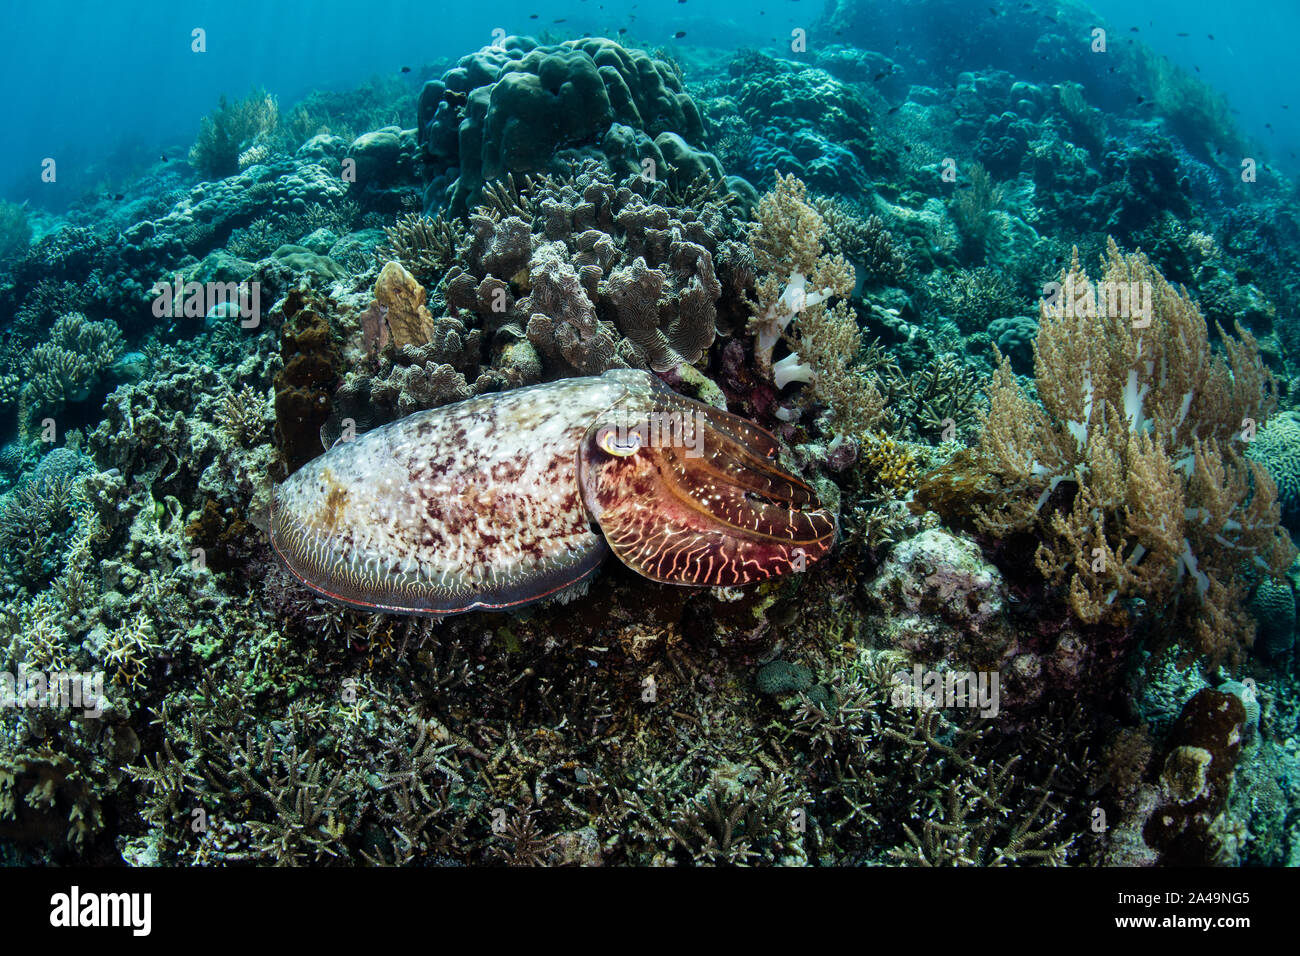 Eine große, bunte Broadclub Tintenfisch, Sepia latimanus, schwebt über einem schönen Korallenriff auf Pulau Teun in der Banda Sea, Indonesien. Stockfoto